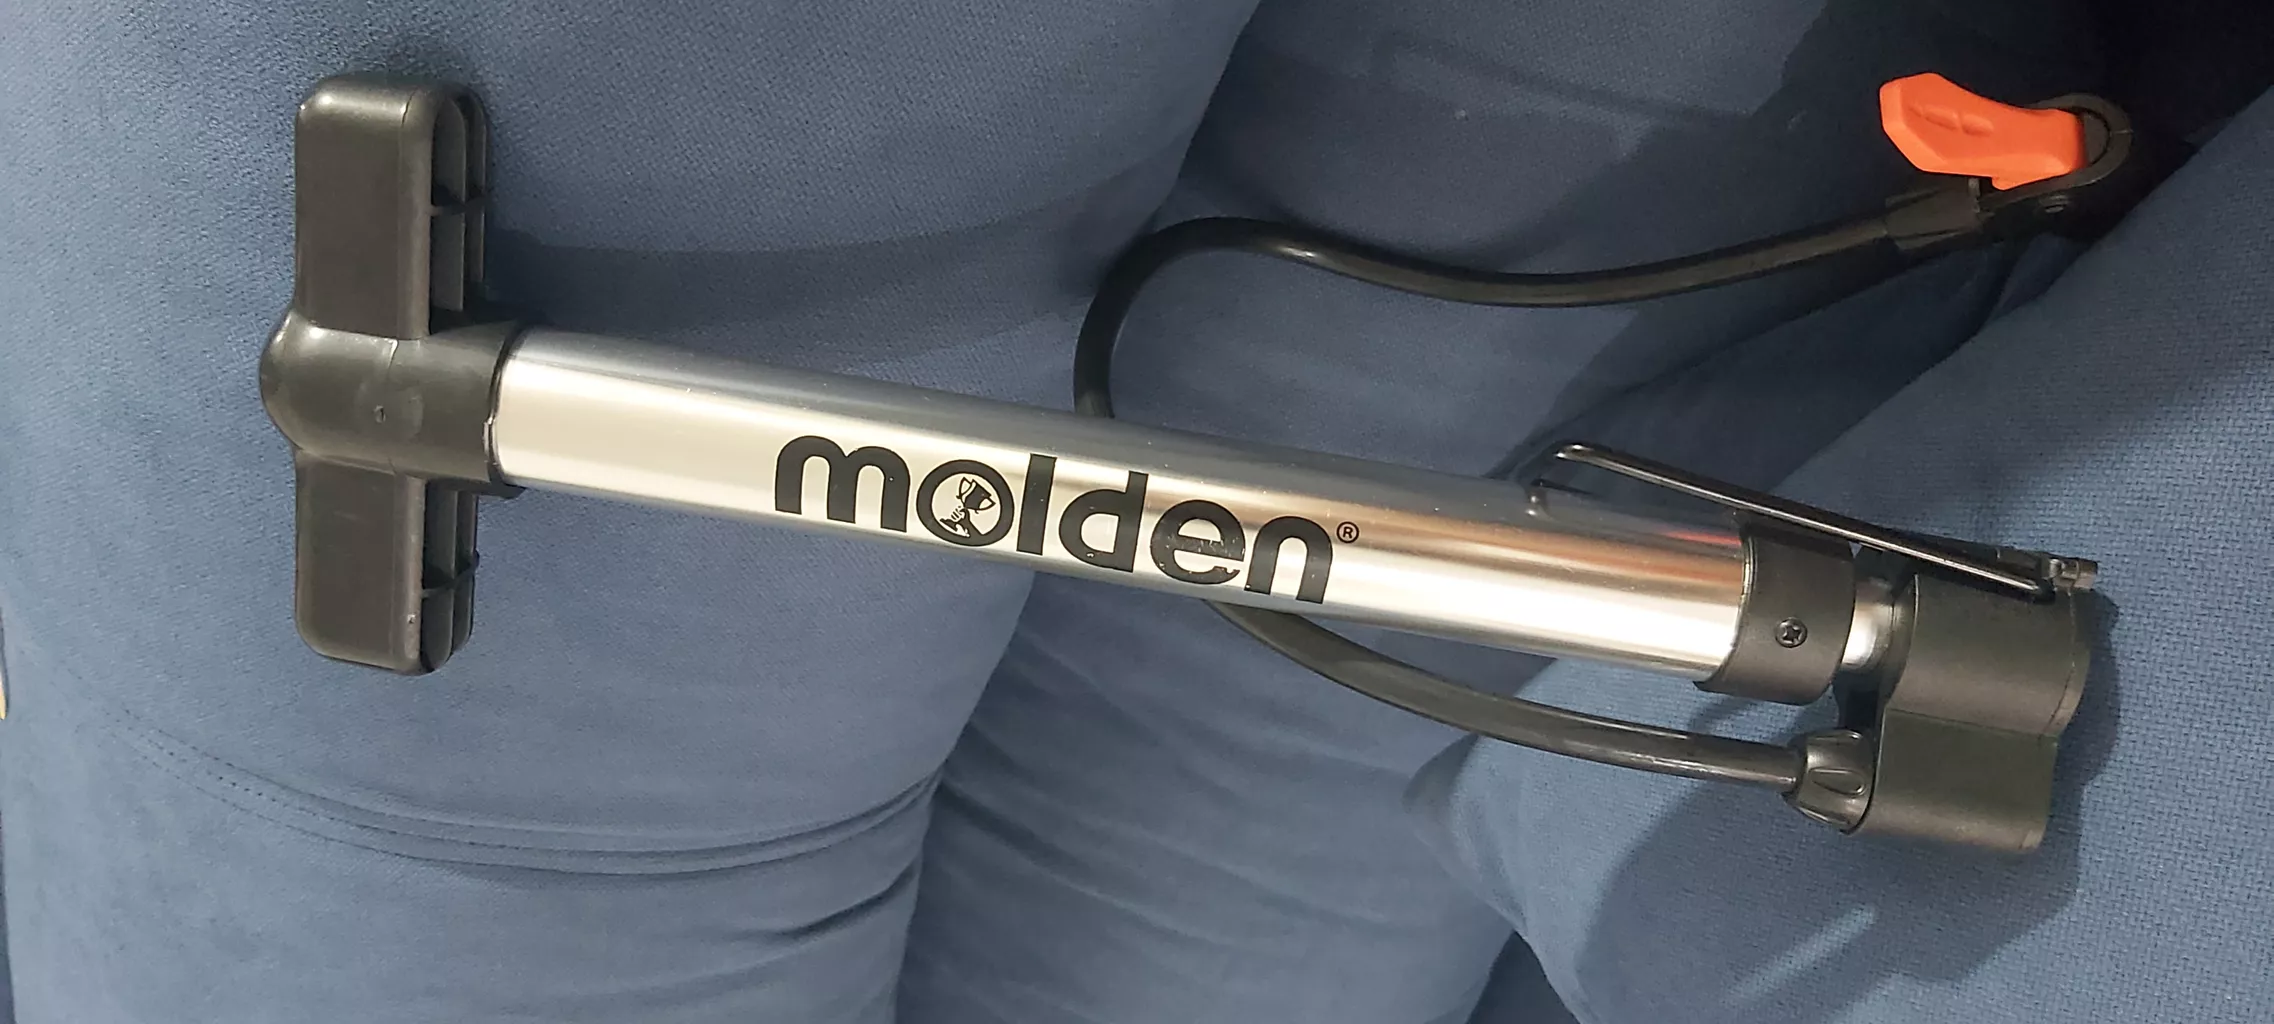 تلمبه دستی مدل PS molden 2021